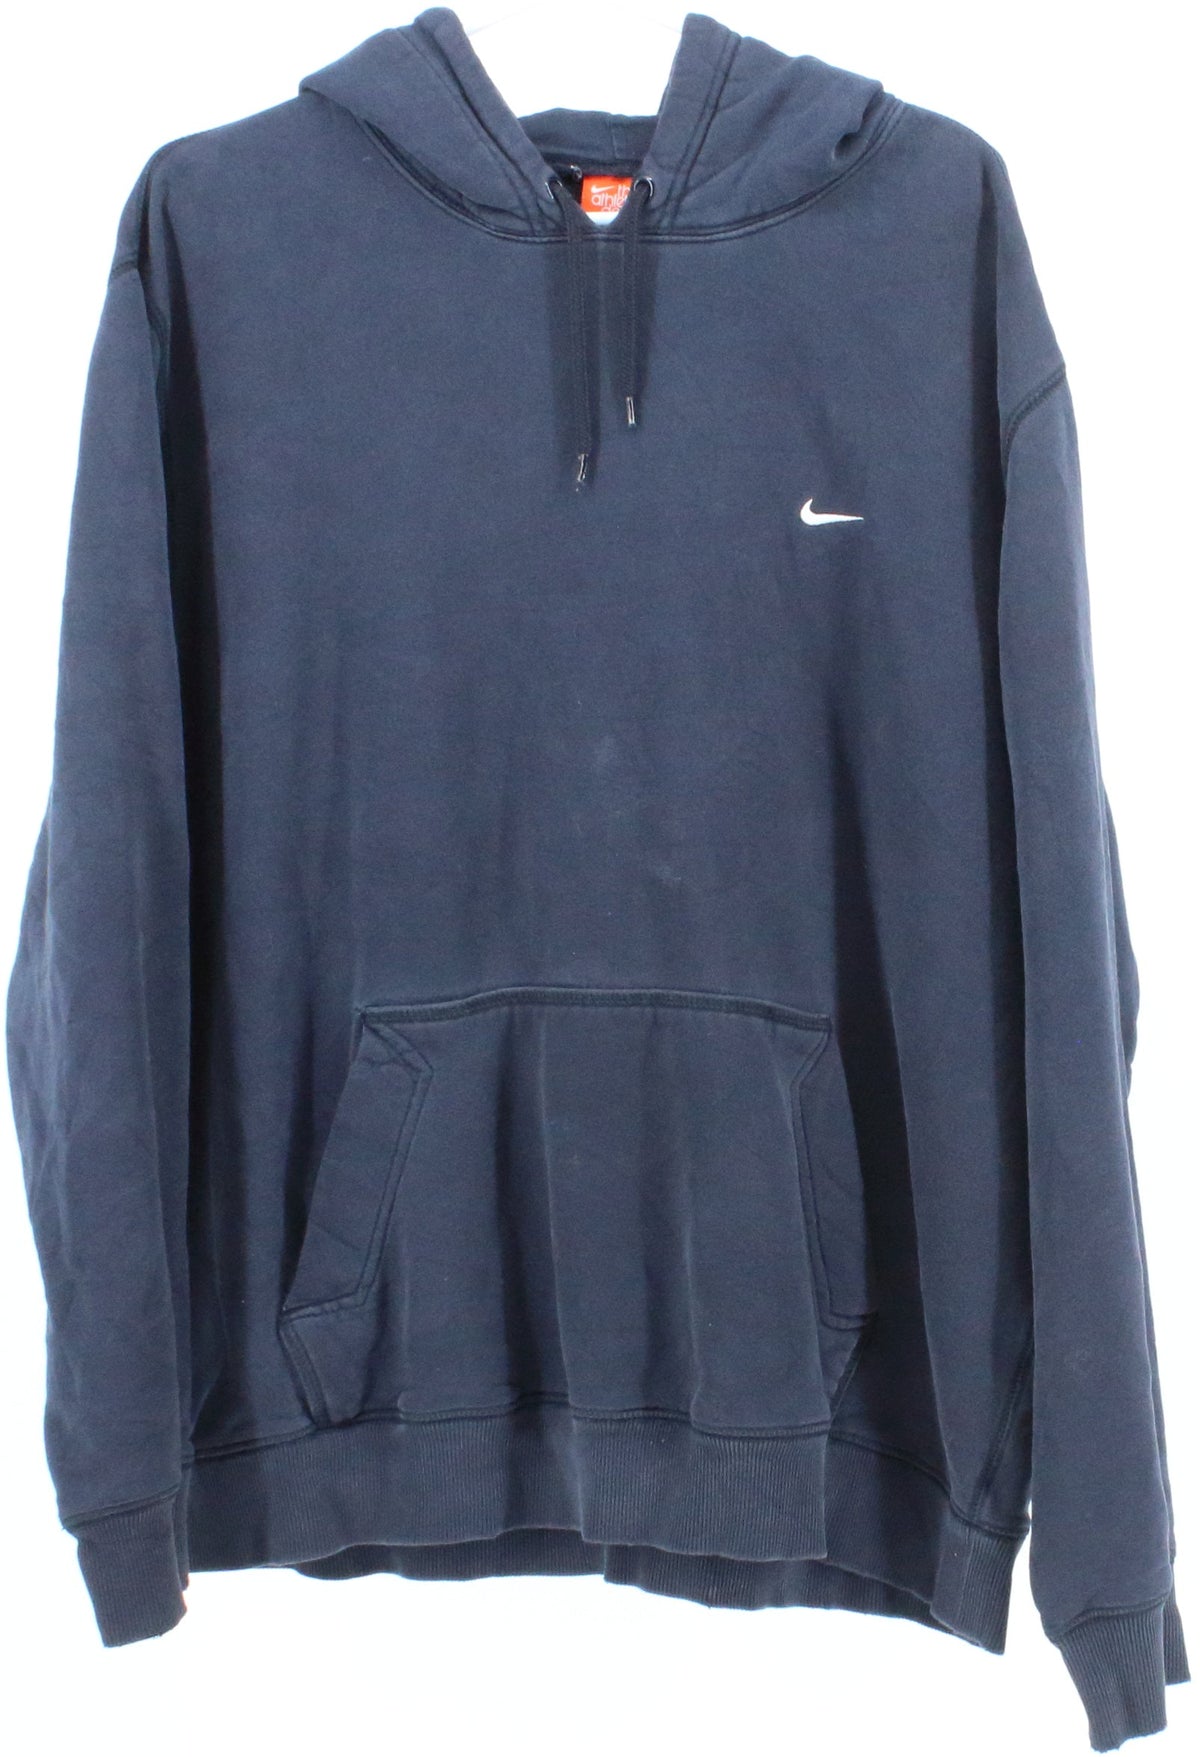 Nike The Athletic Dept. Navy Blue Hooded Sweatshirt